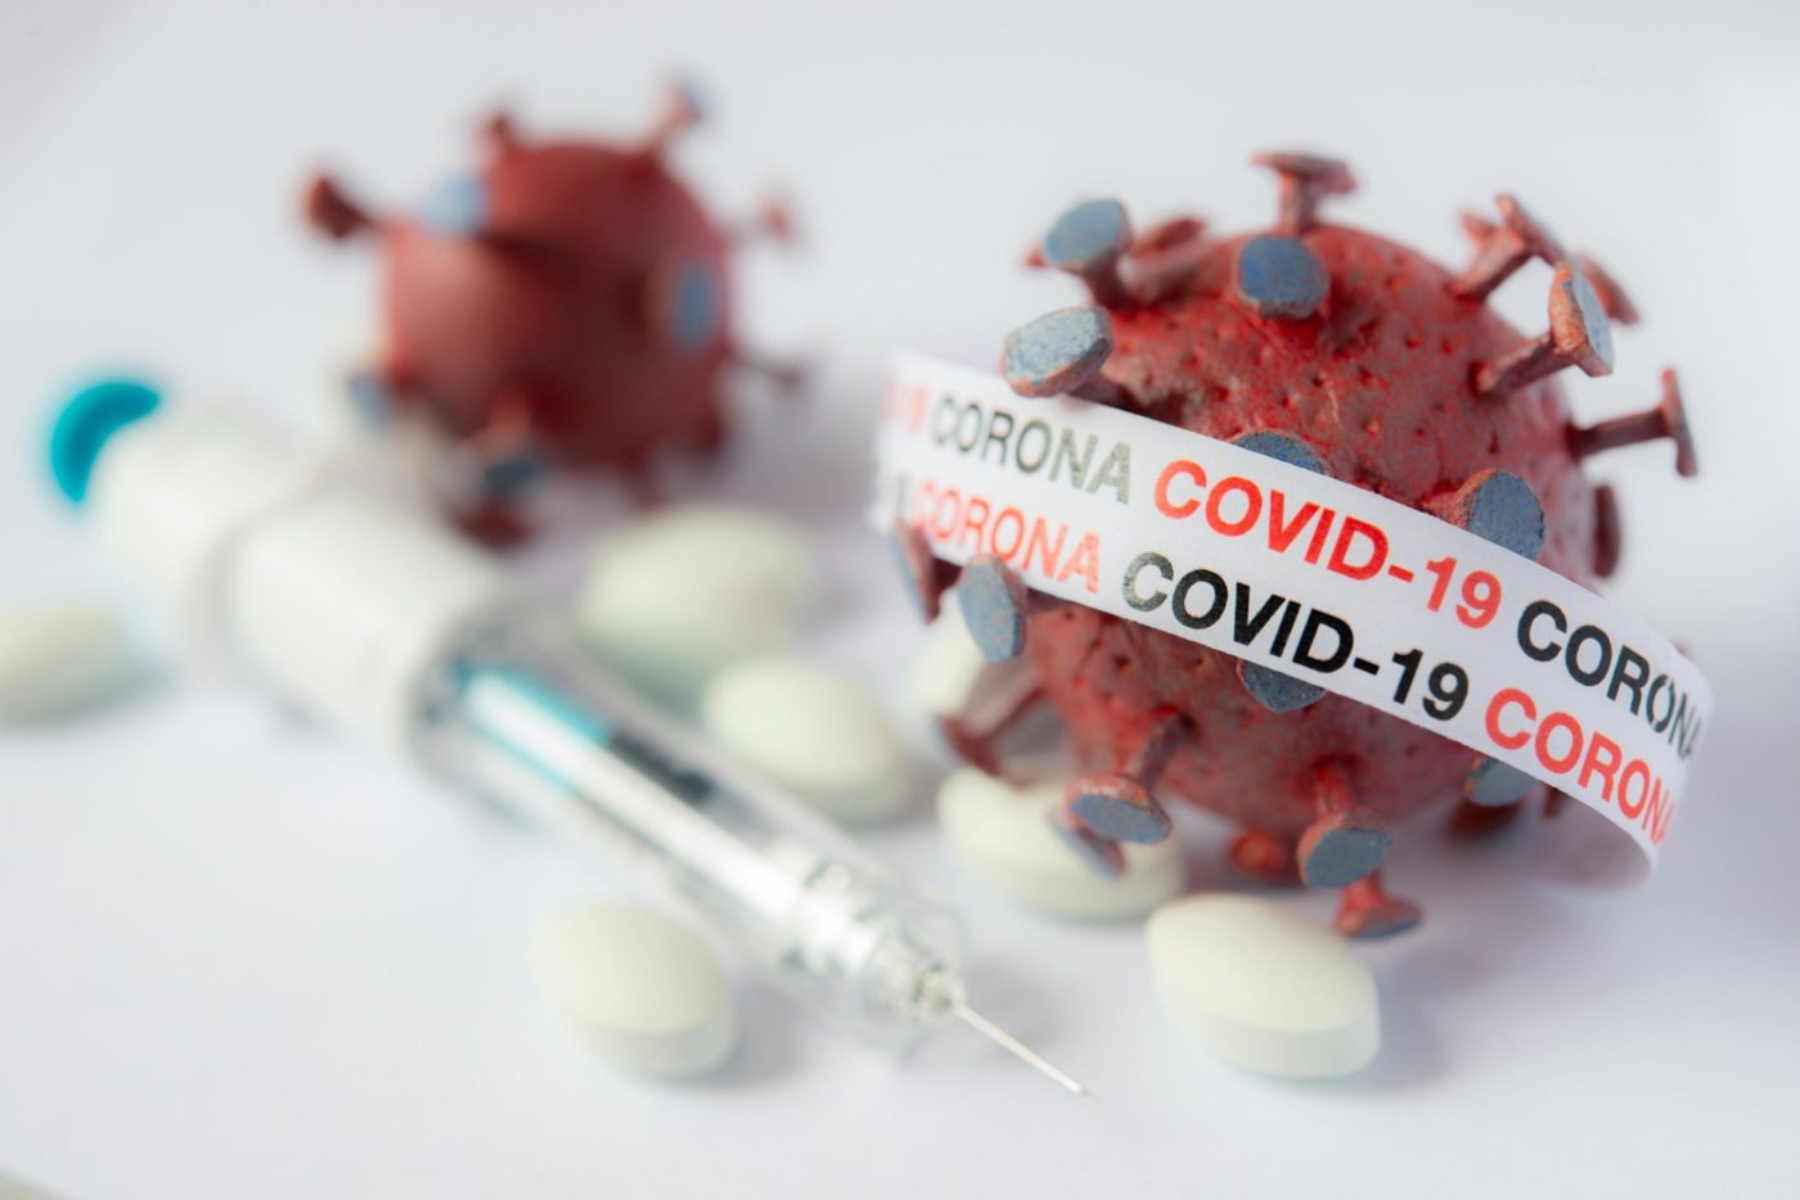 Από τη Δευτέρα λειτουργεί ξανά η πλατφόρμα εμβολιασμού Covid